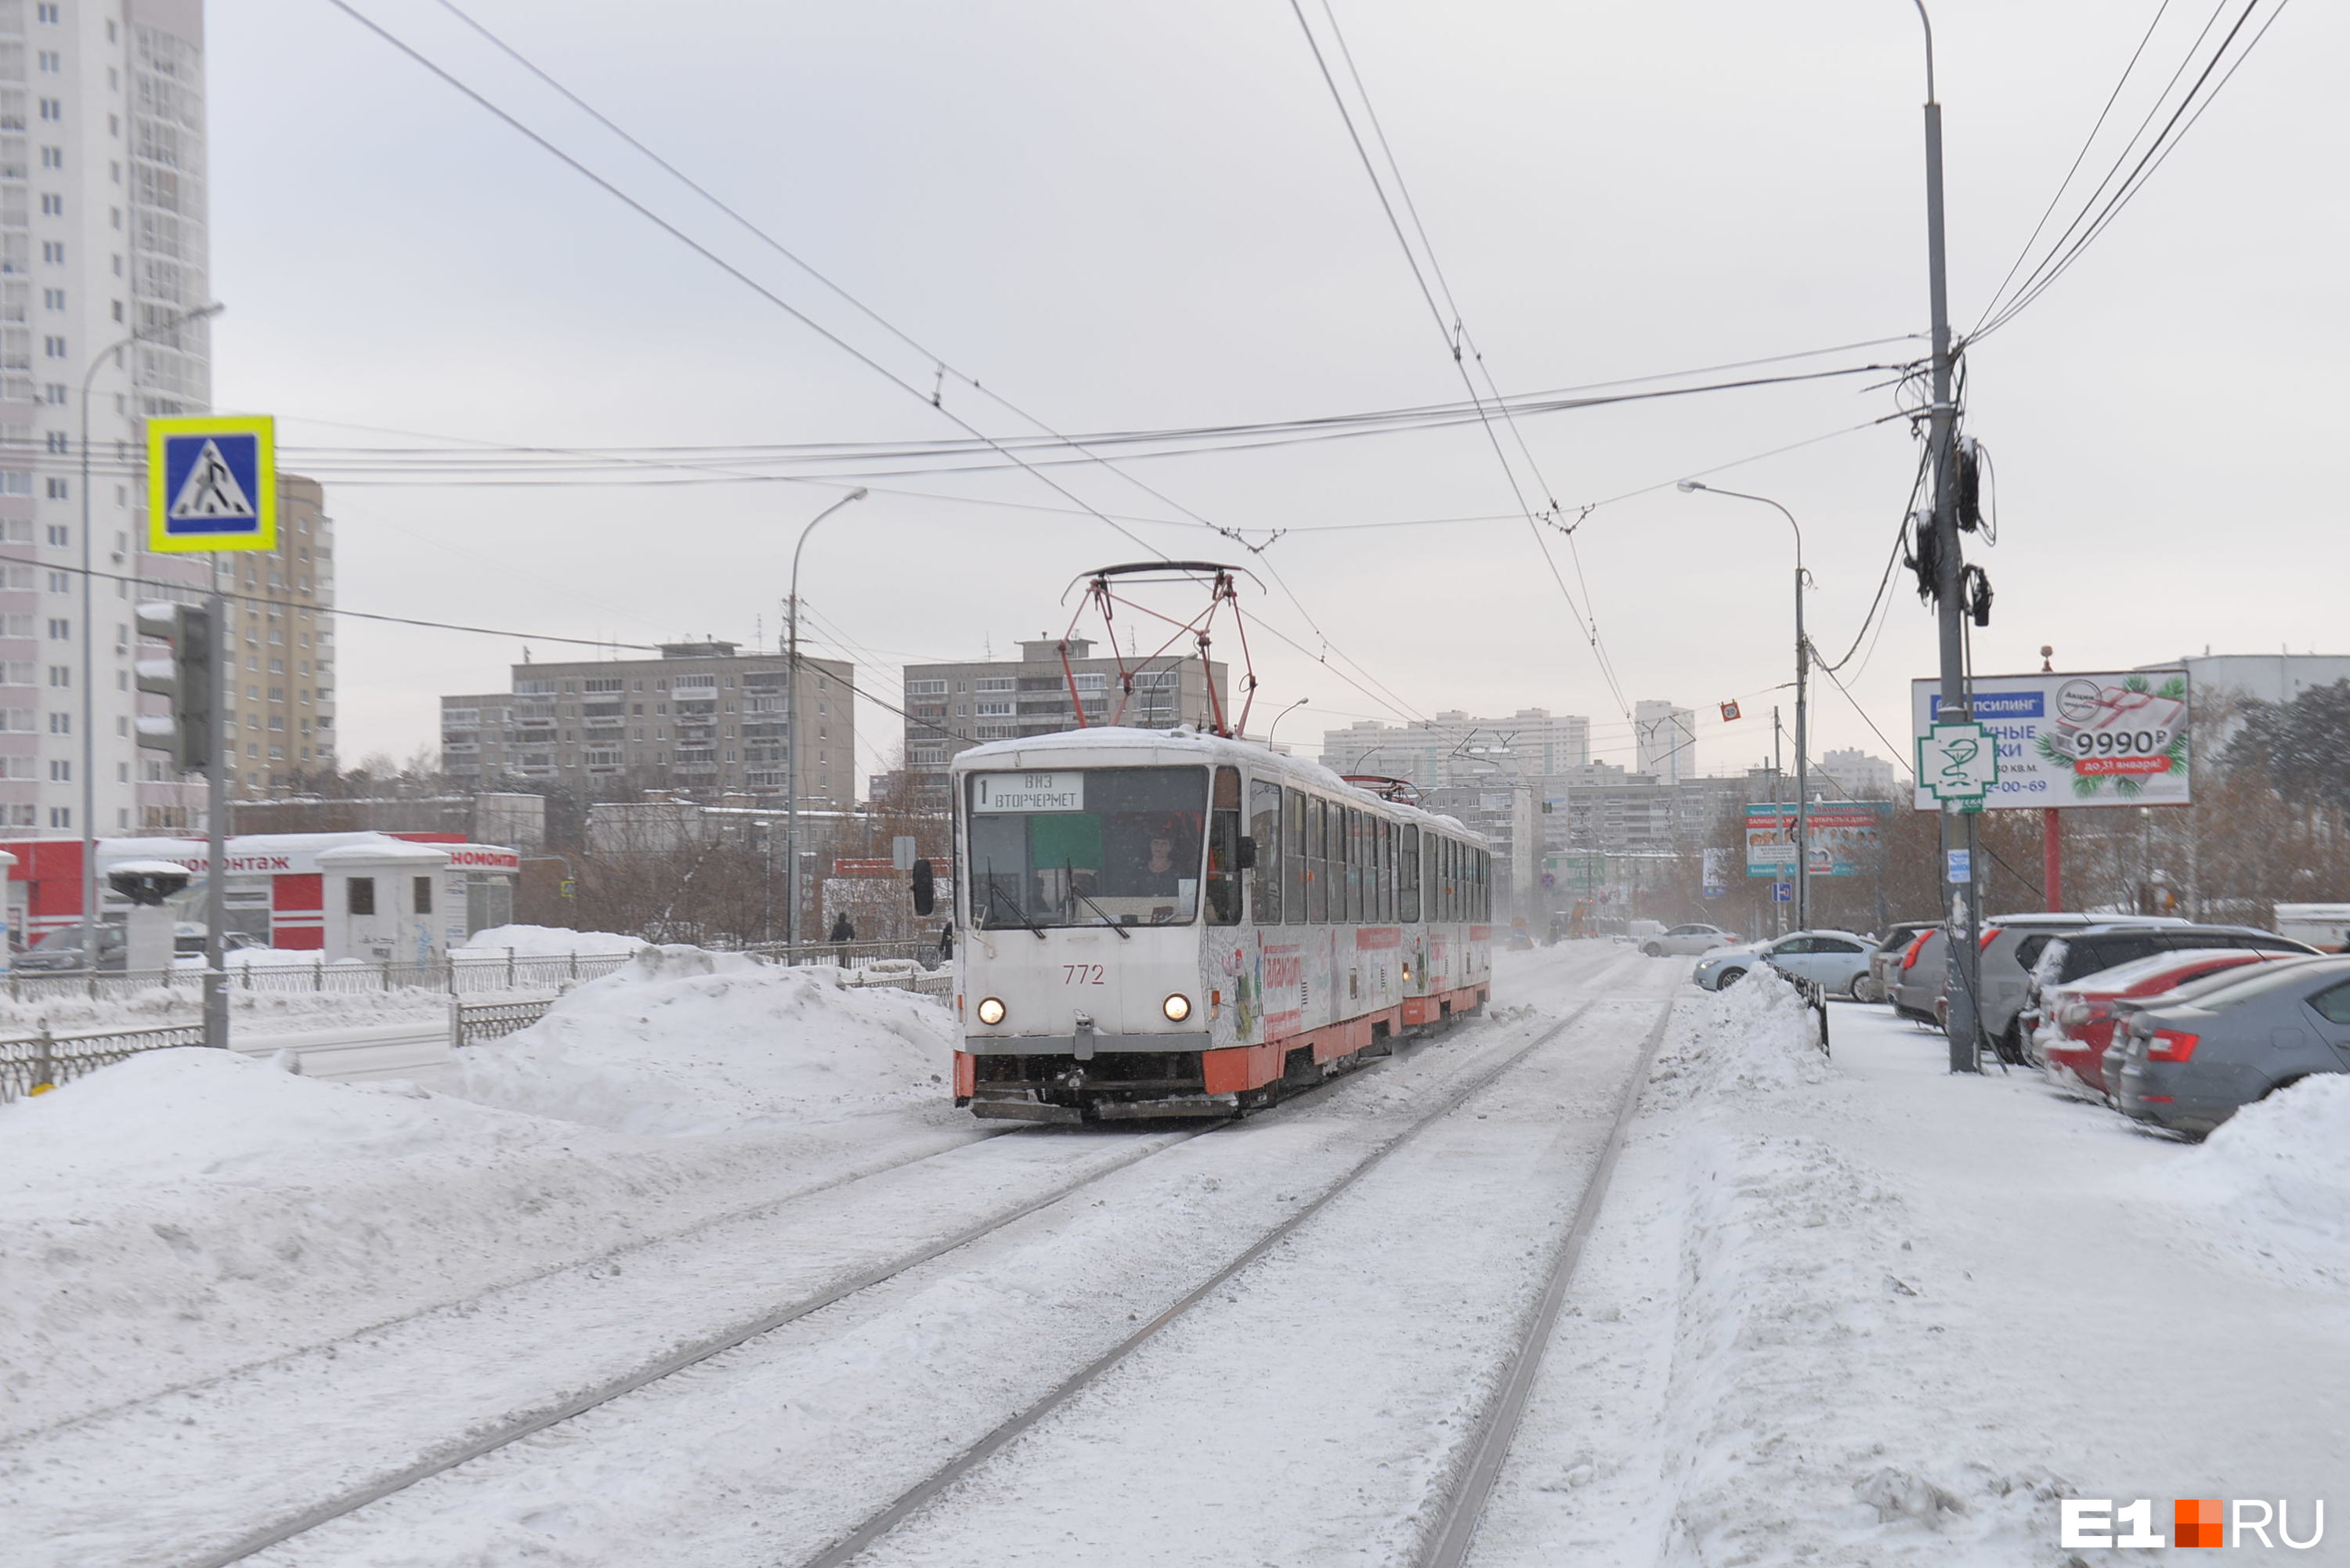 «Да, кому-то стало неудобно». Глава Екатеринбурга ответил, вернут ли трамвай №1 ВИЗу